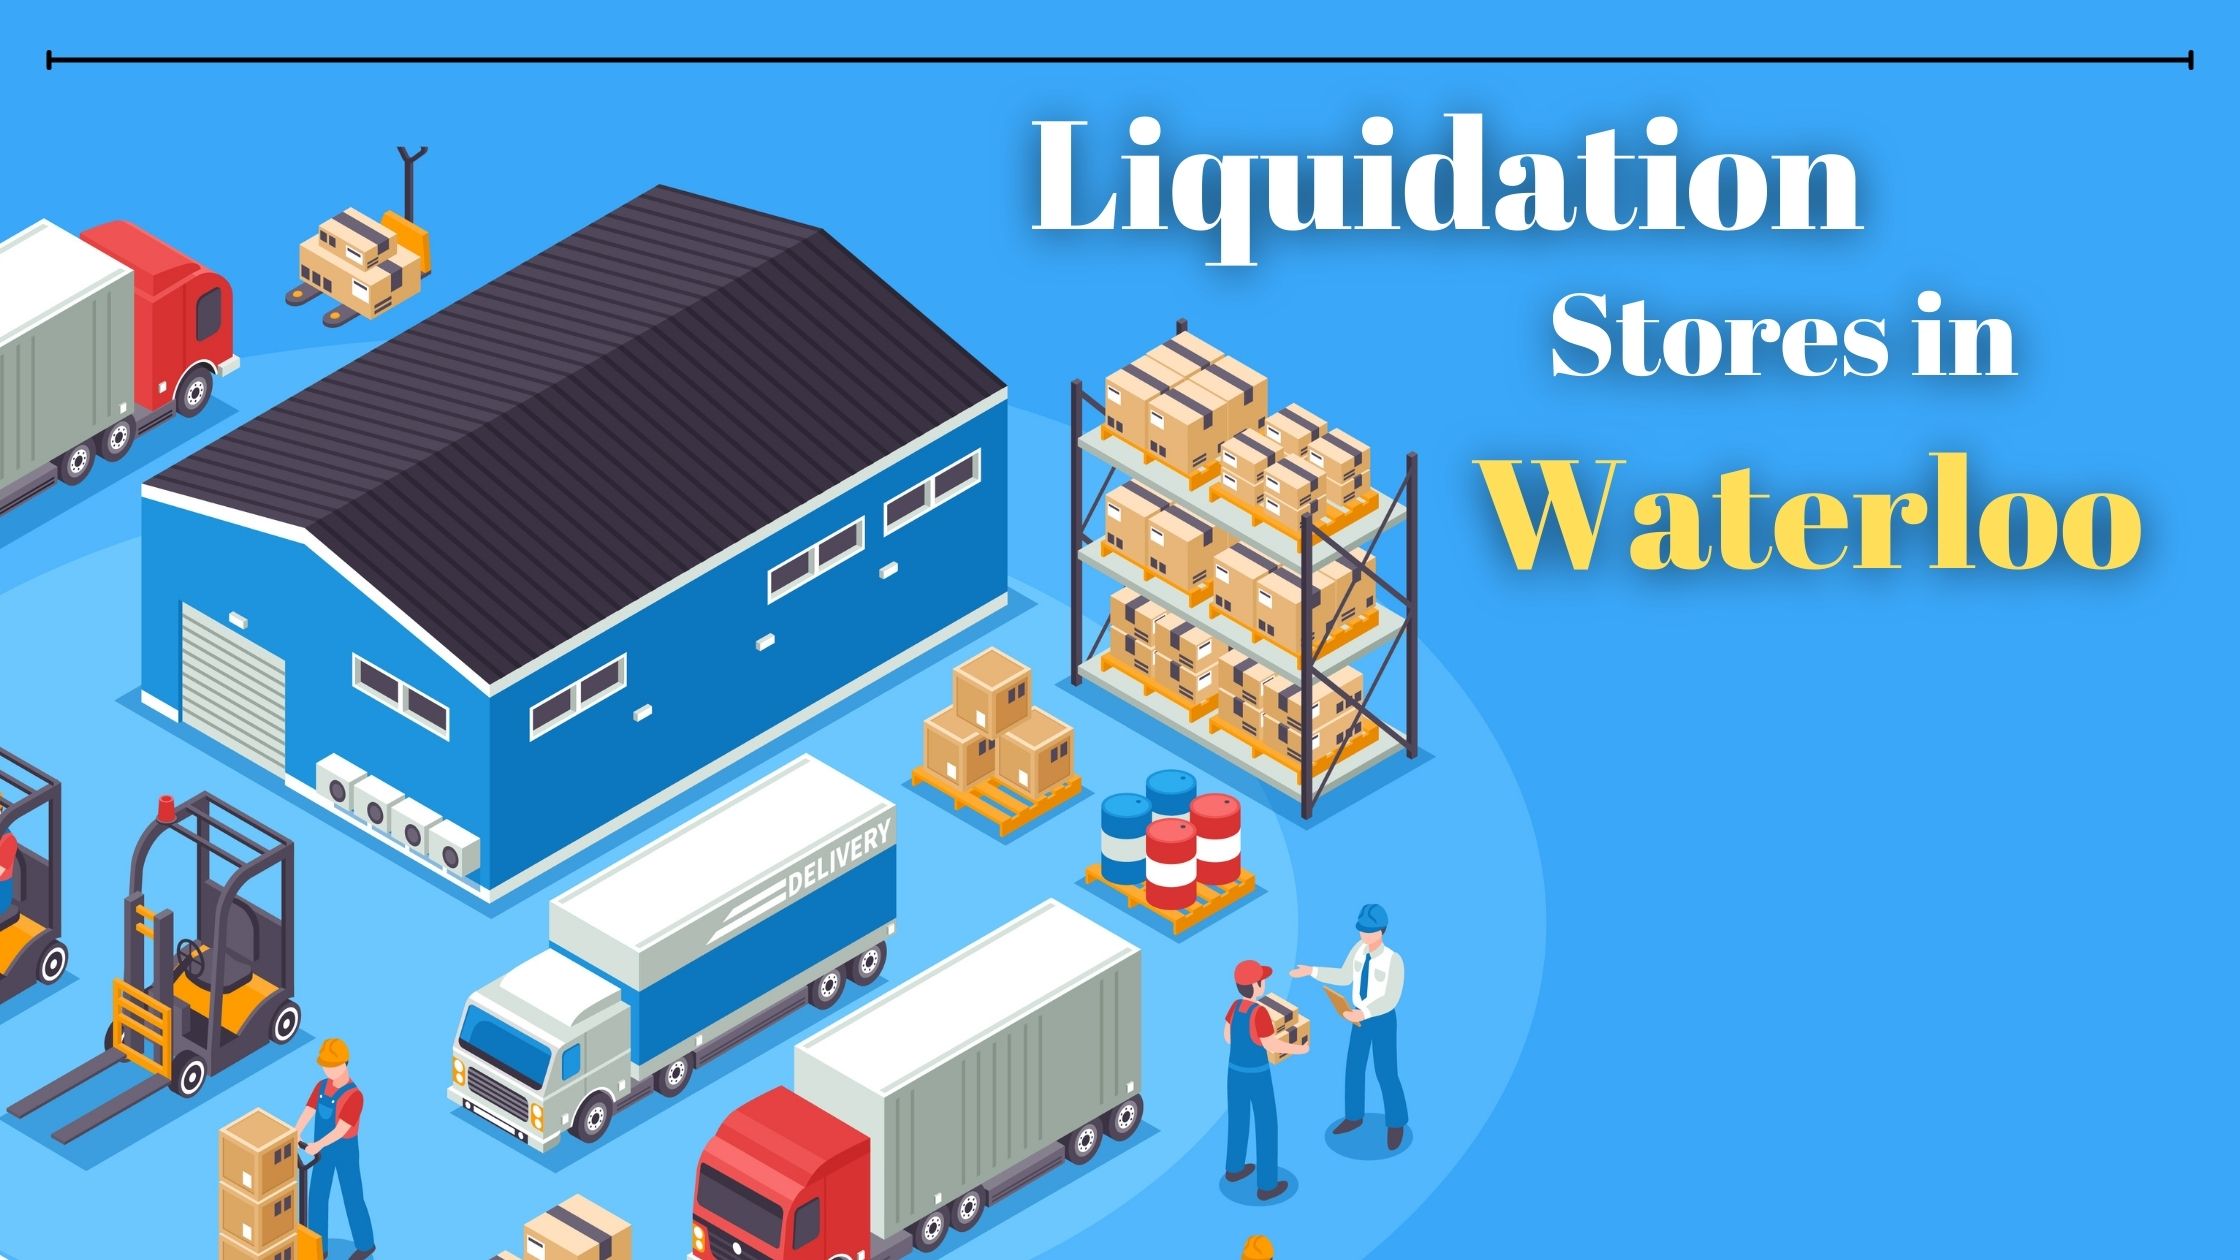 Liquidation Stores in Waterloo